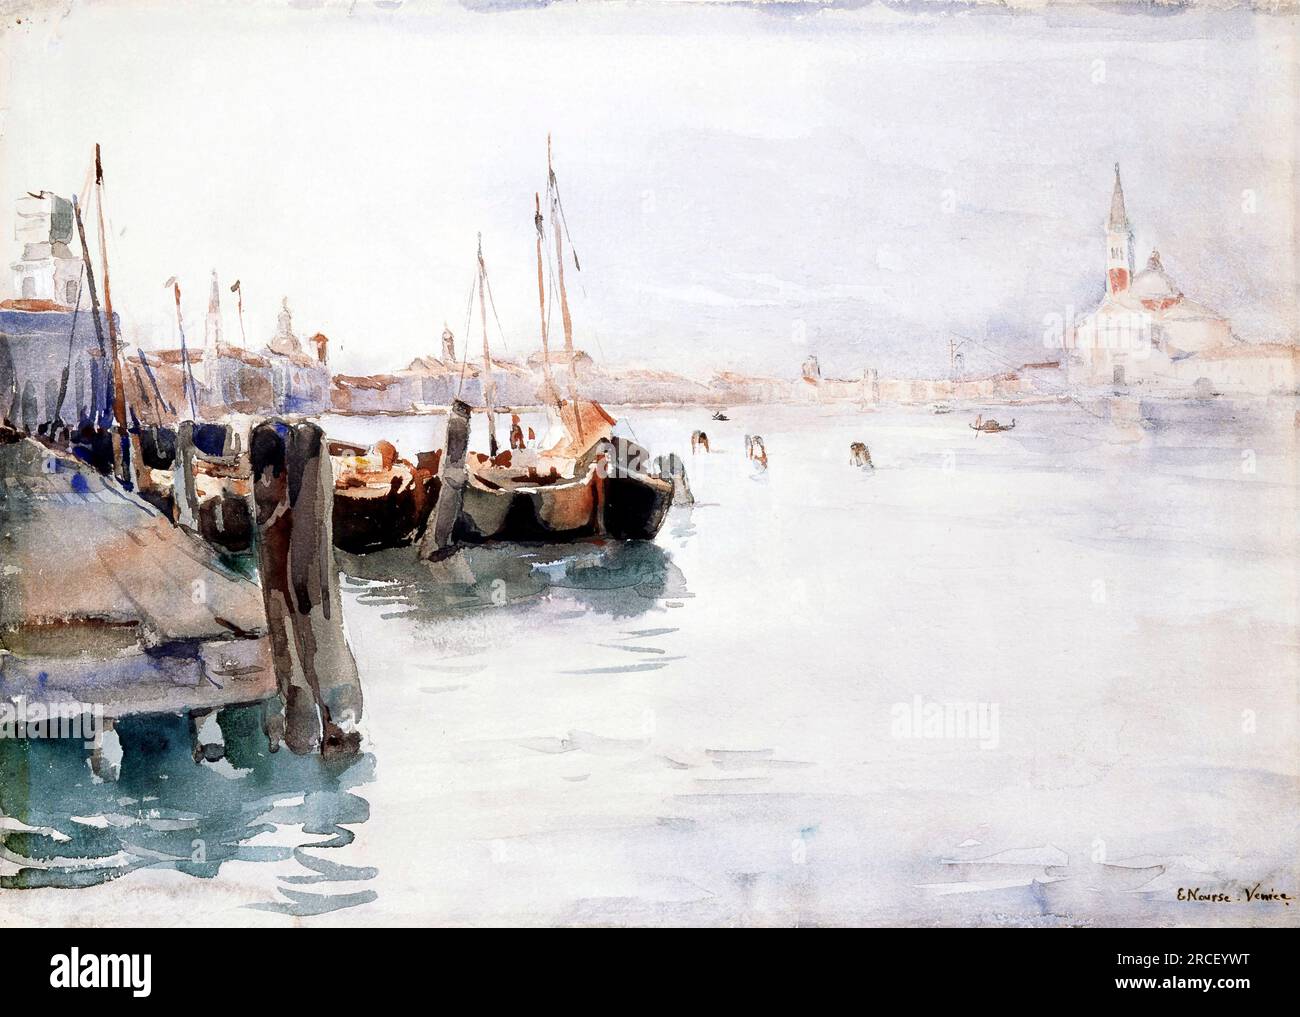 Venedig von der amerikanischen Künstlerin Elizabeth Nourse (1859-1938), Aquarell über Bleistiftspuren, 1891 Stockfoto